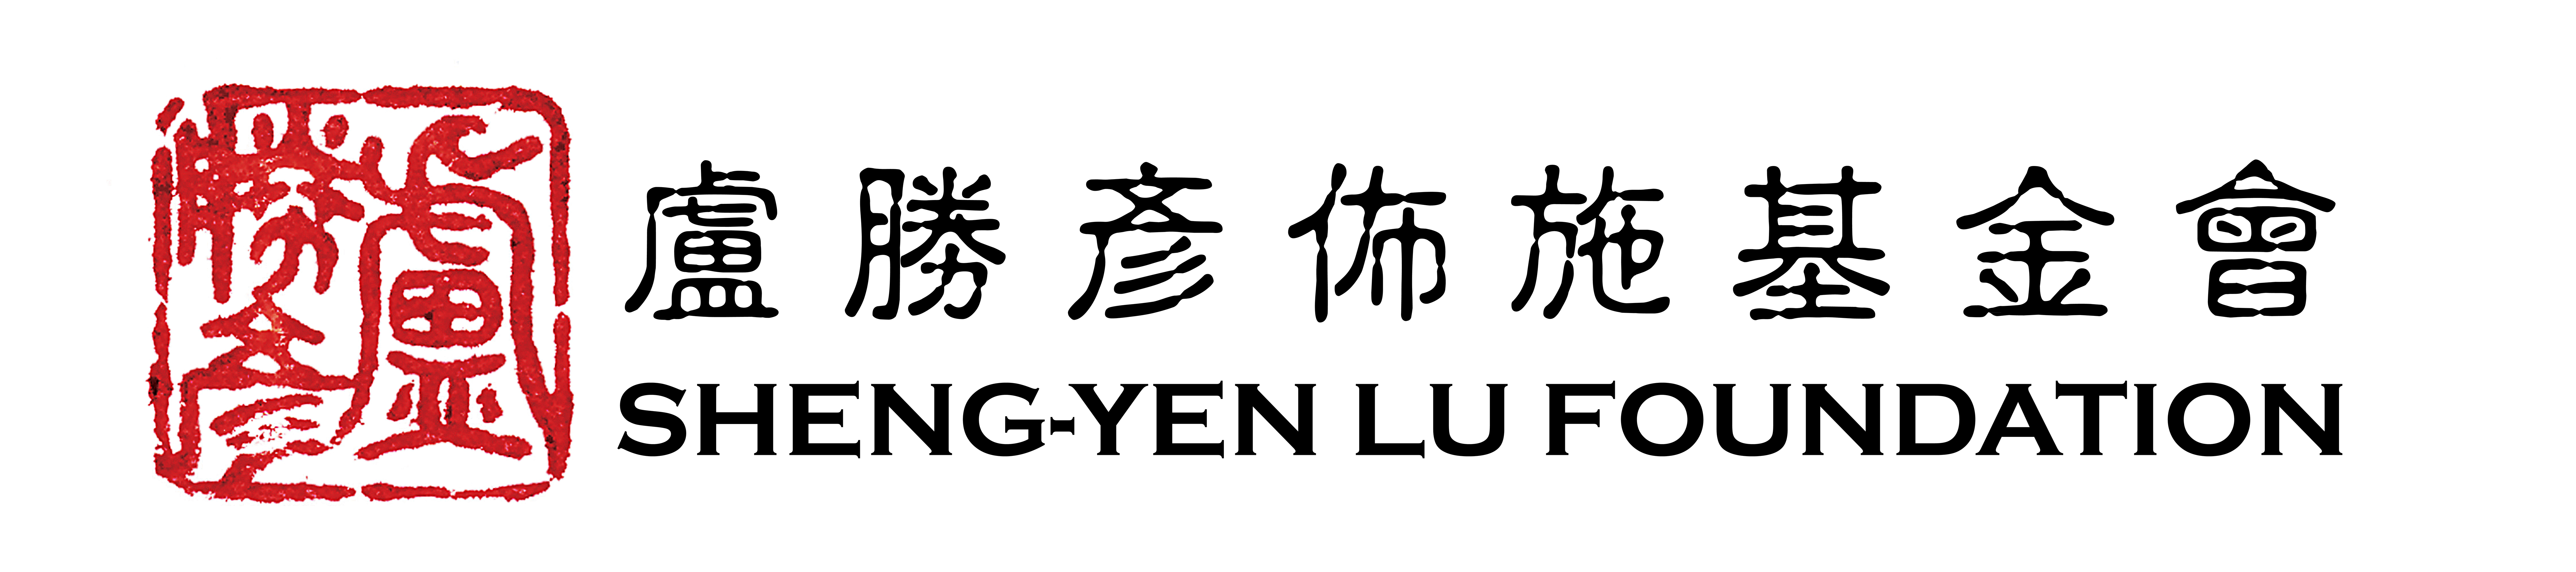 Logo: Sheng-Yen Lu Foundation